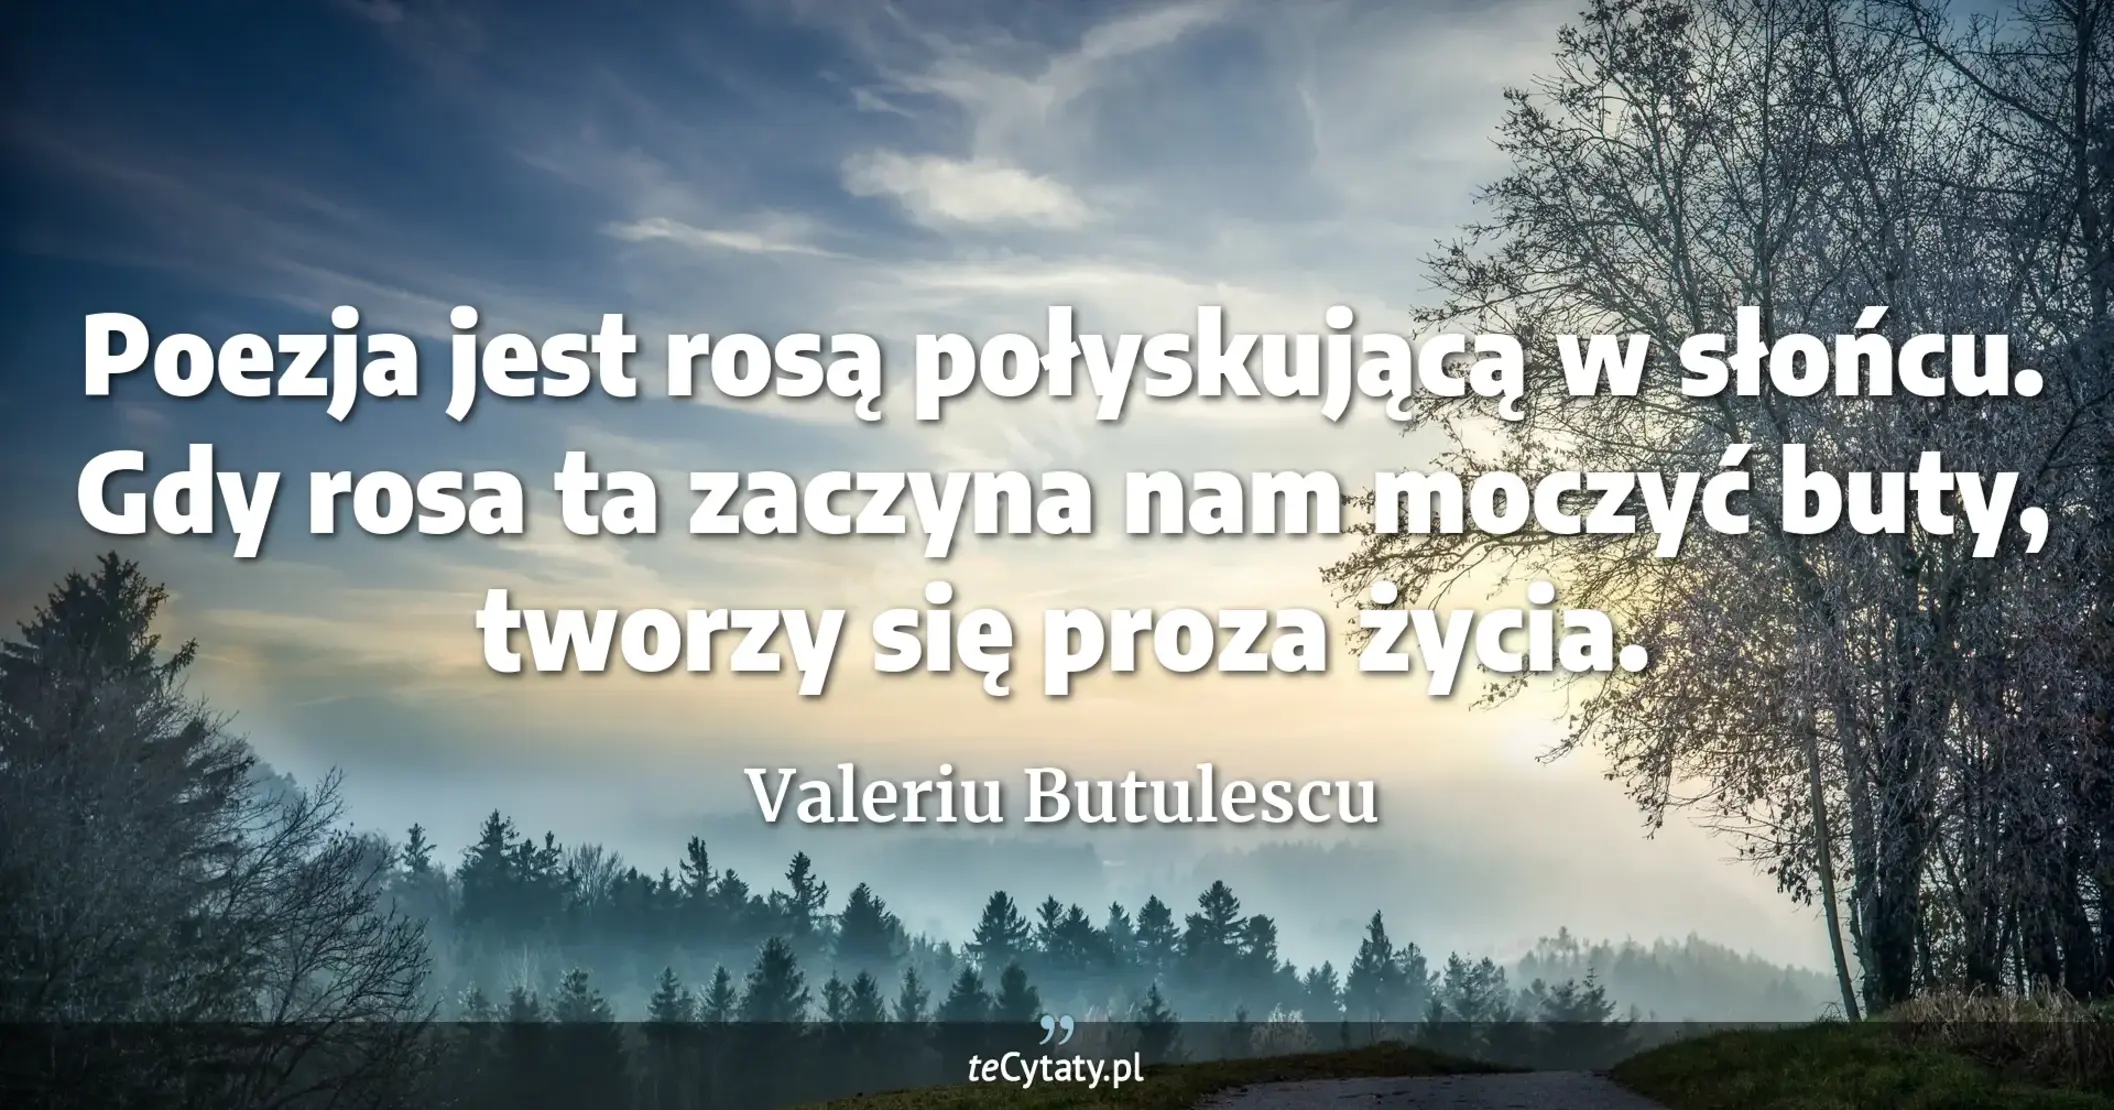 Poezja jest rosą połyskującą w słońcu. Gdy rosa ta zaczyna nam moczyć buty, tworzy się proza życia. - Valeriu Butulescu